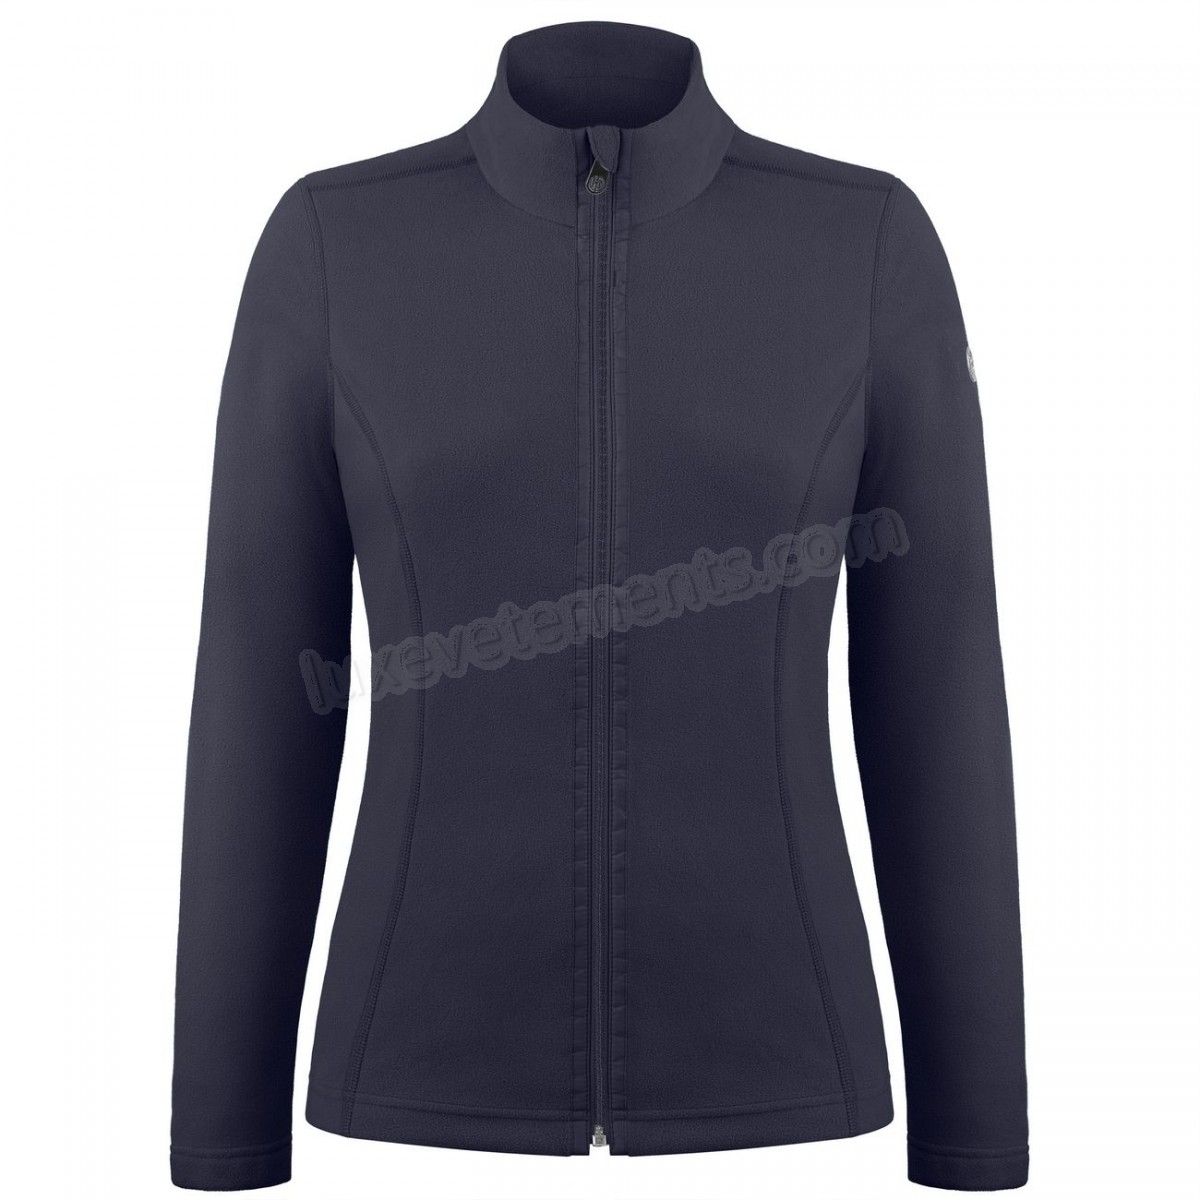 Poivre Blanc-Sports d'hiver femme POIVRE BLANC Veste Polaire Poivre Blanc Fleece Jacket 1500 Gothic Blue 4 Femme Vente en ligne - -4